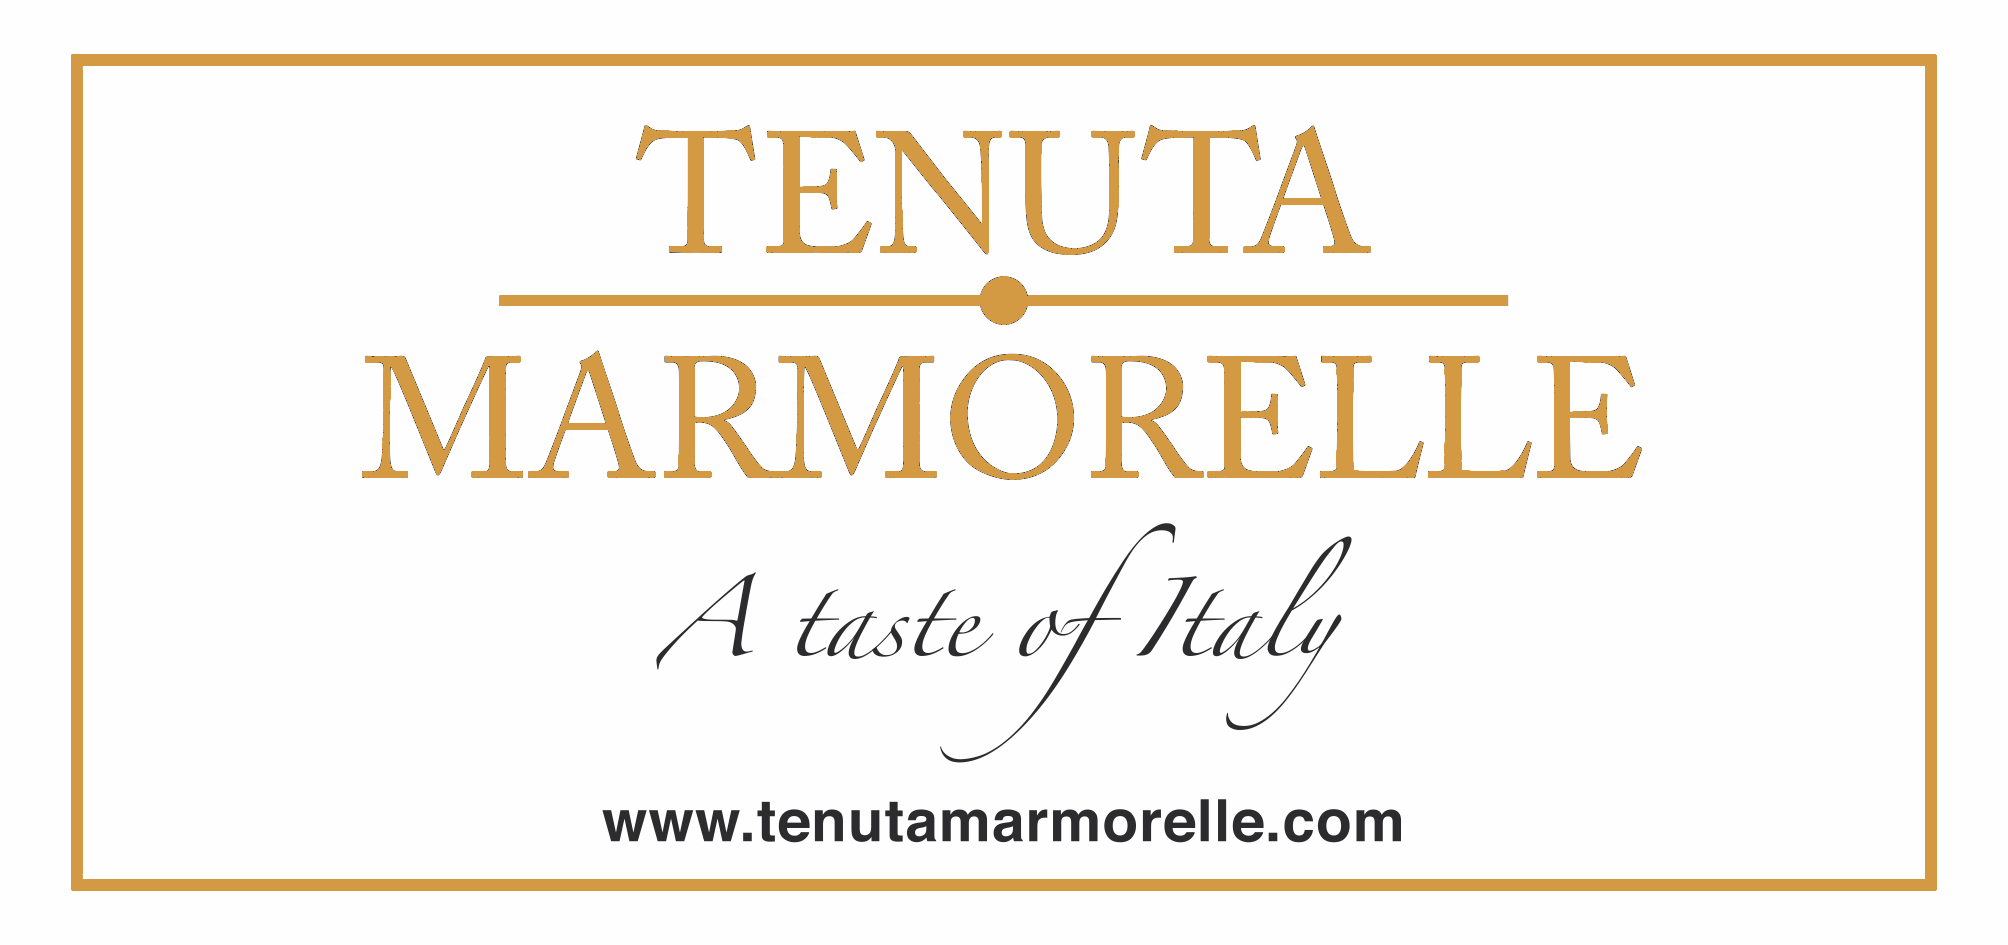 Tenuta Marmorelle Ltd